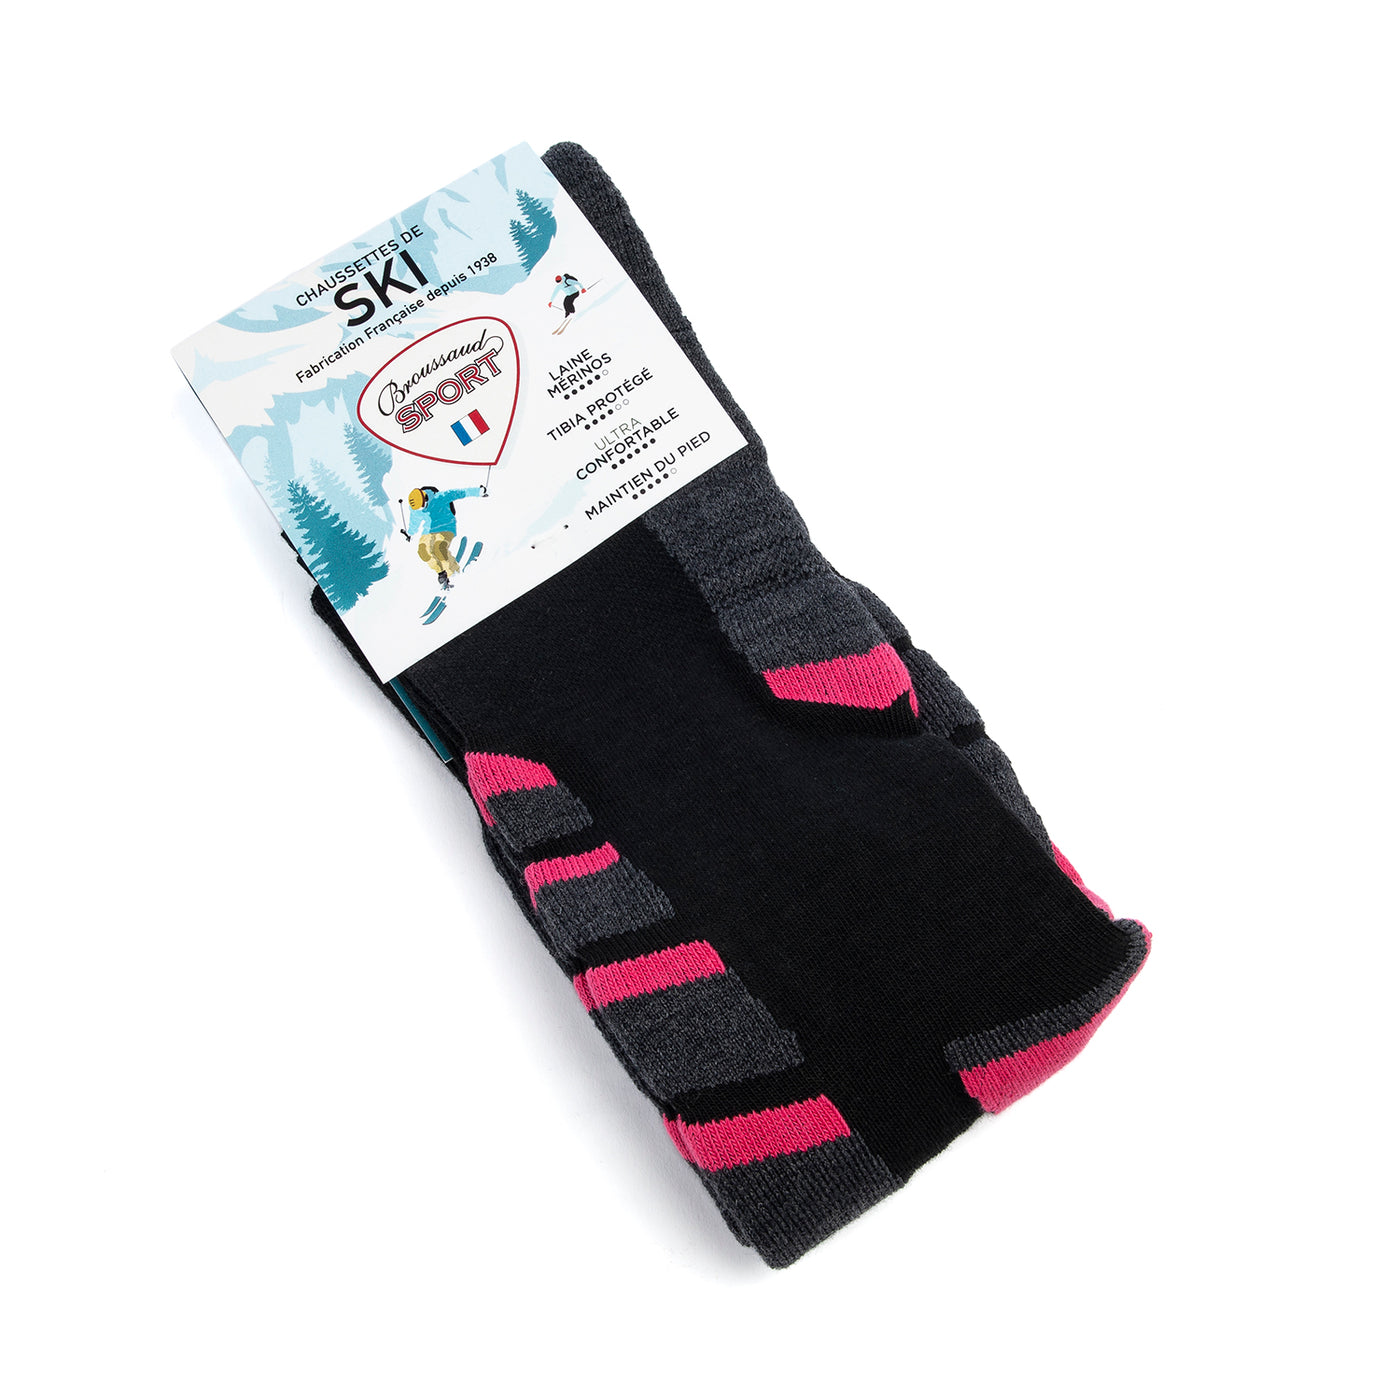 Ski socks black/grey/pink